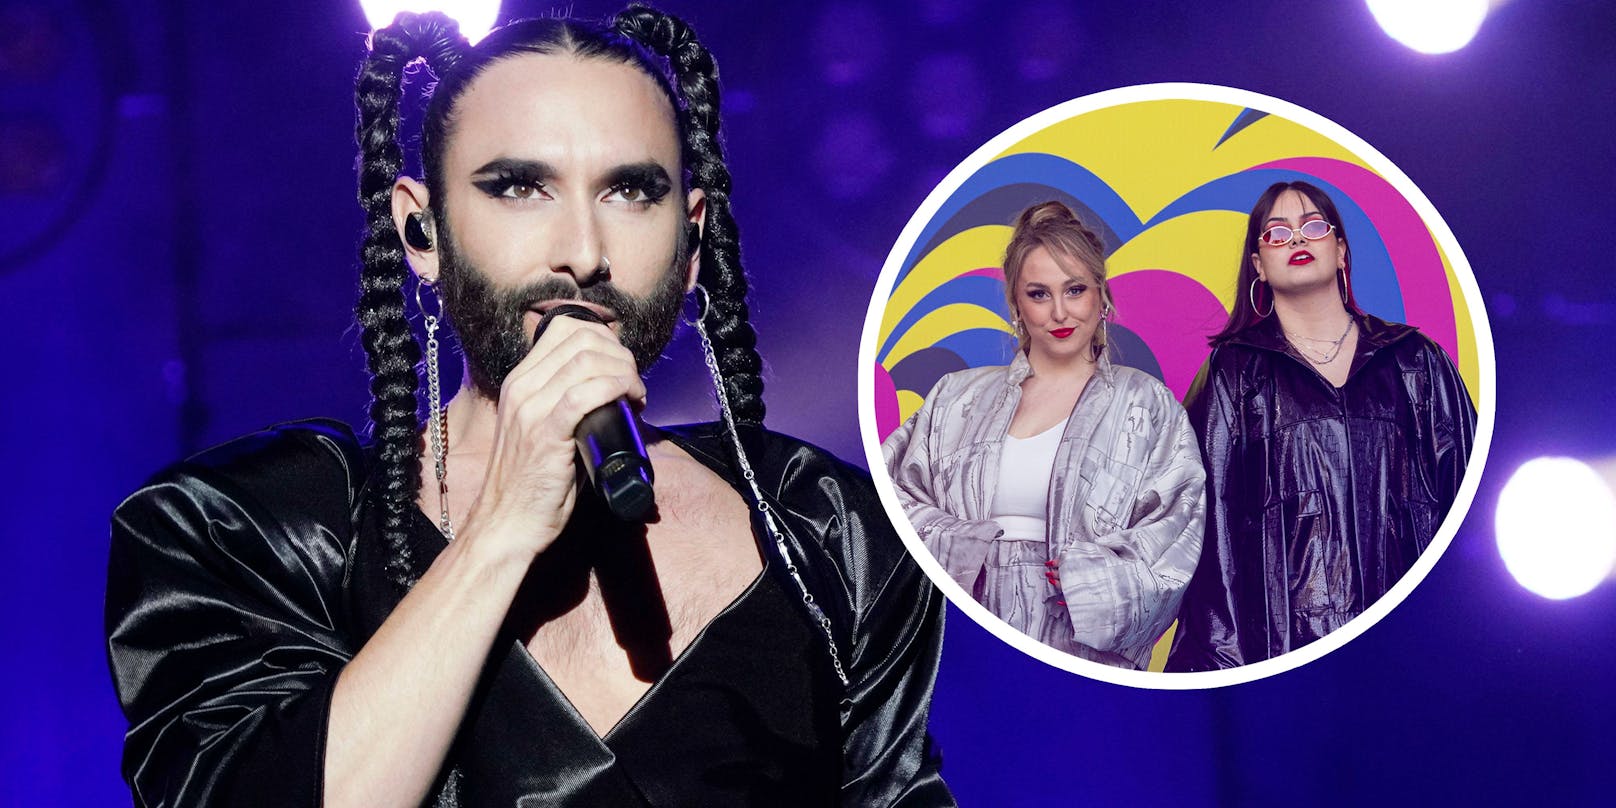 "Song Contest": Will Conchita nicht, dass wir gewinnen?